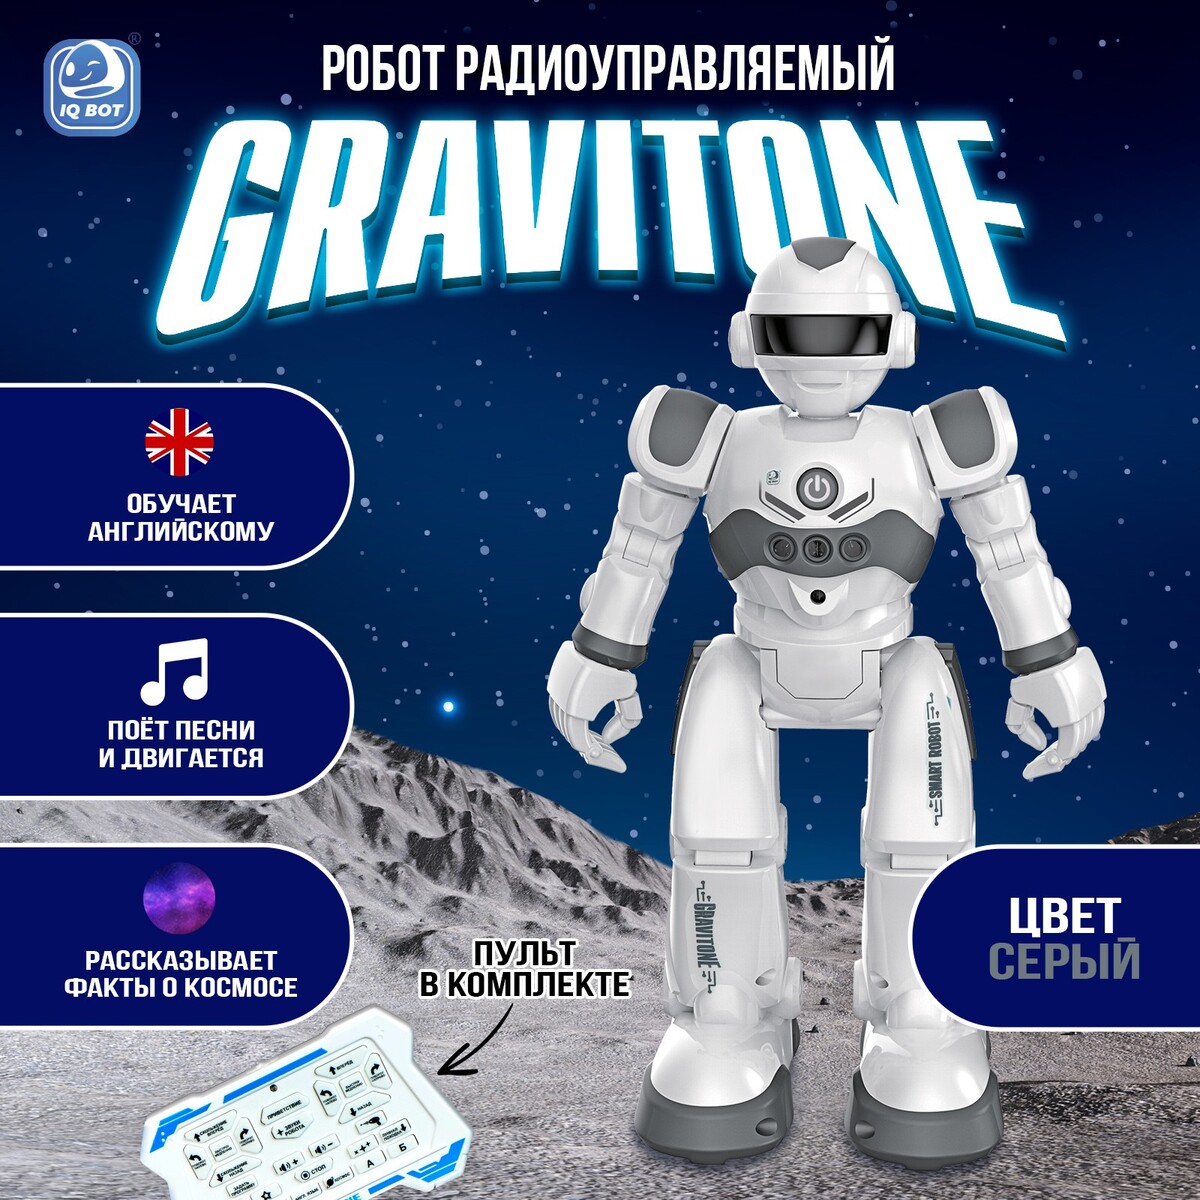 Робот радиоуправляемый iq bot gravitone, русское озвучивание, цвет серый робот трансформер abtoys android серый